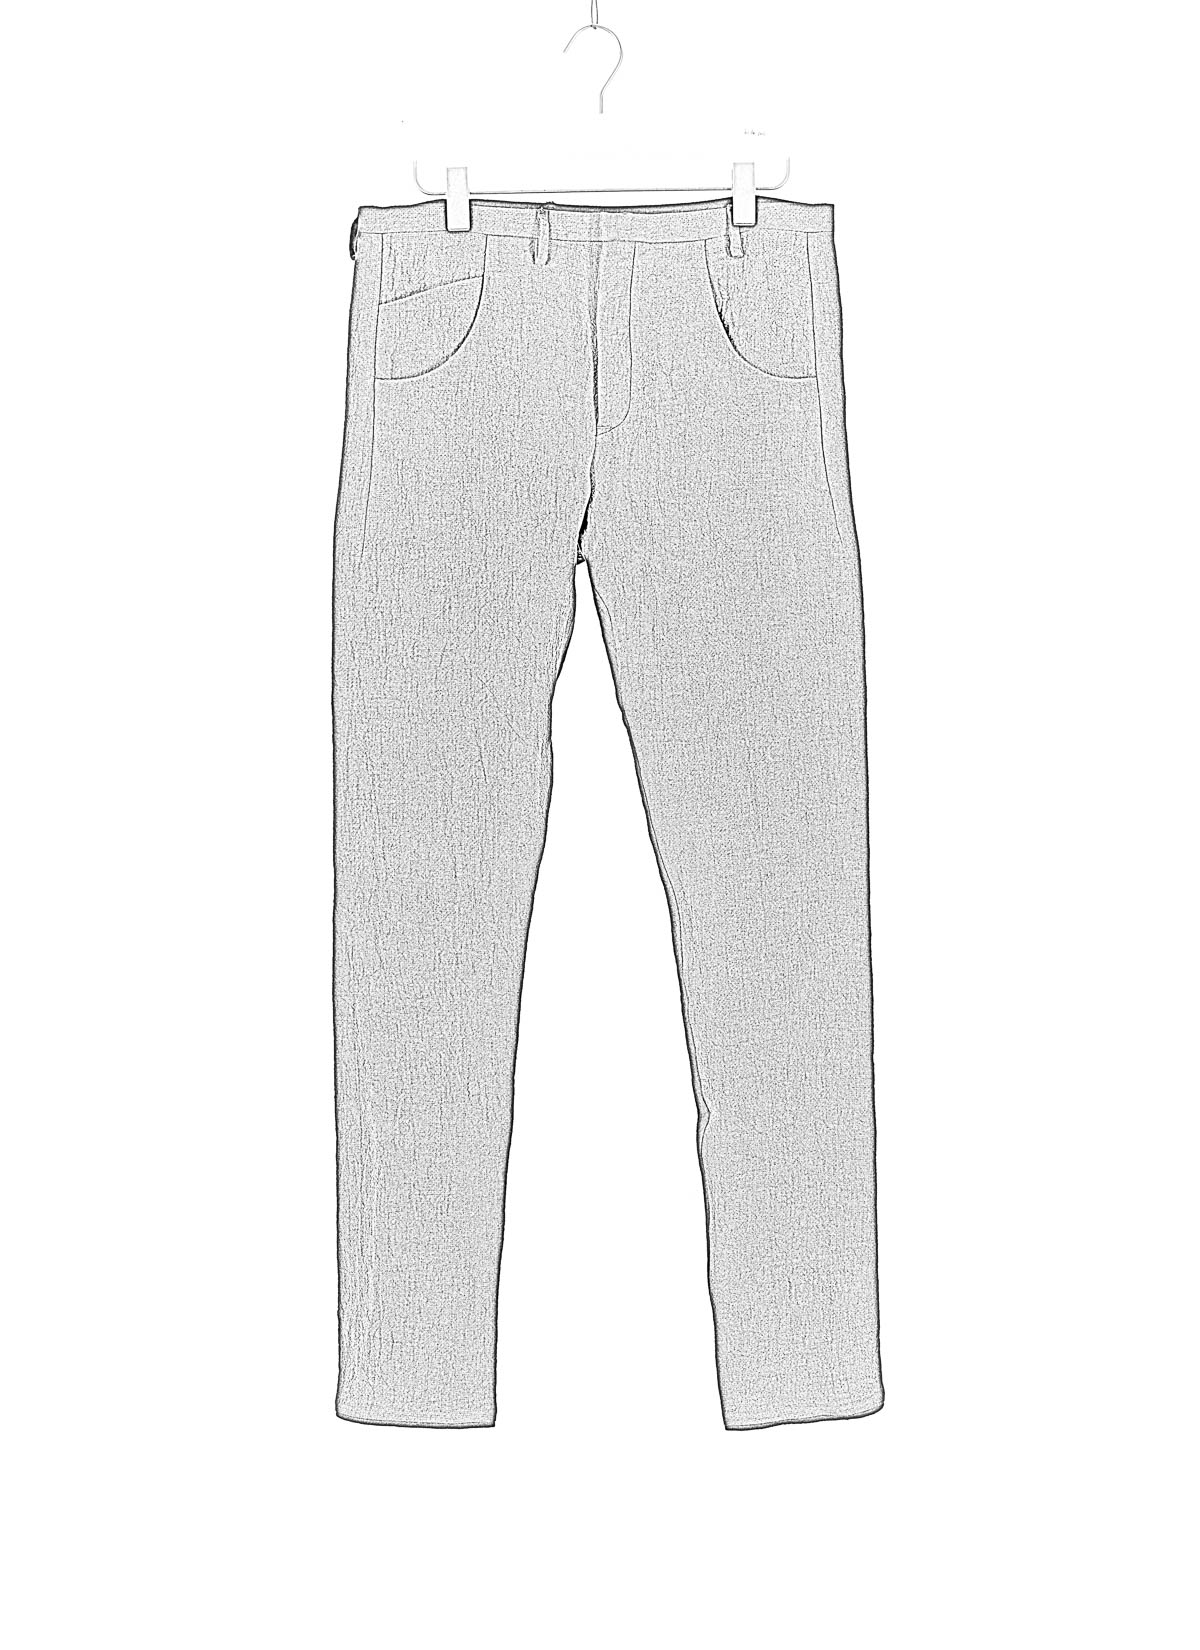 hide-m | Label Under Construction One Cut Hybrid Jeans, black linen